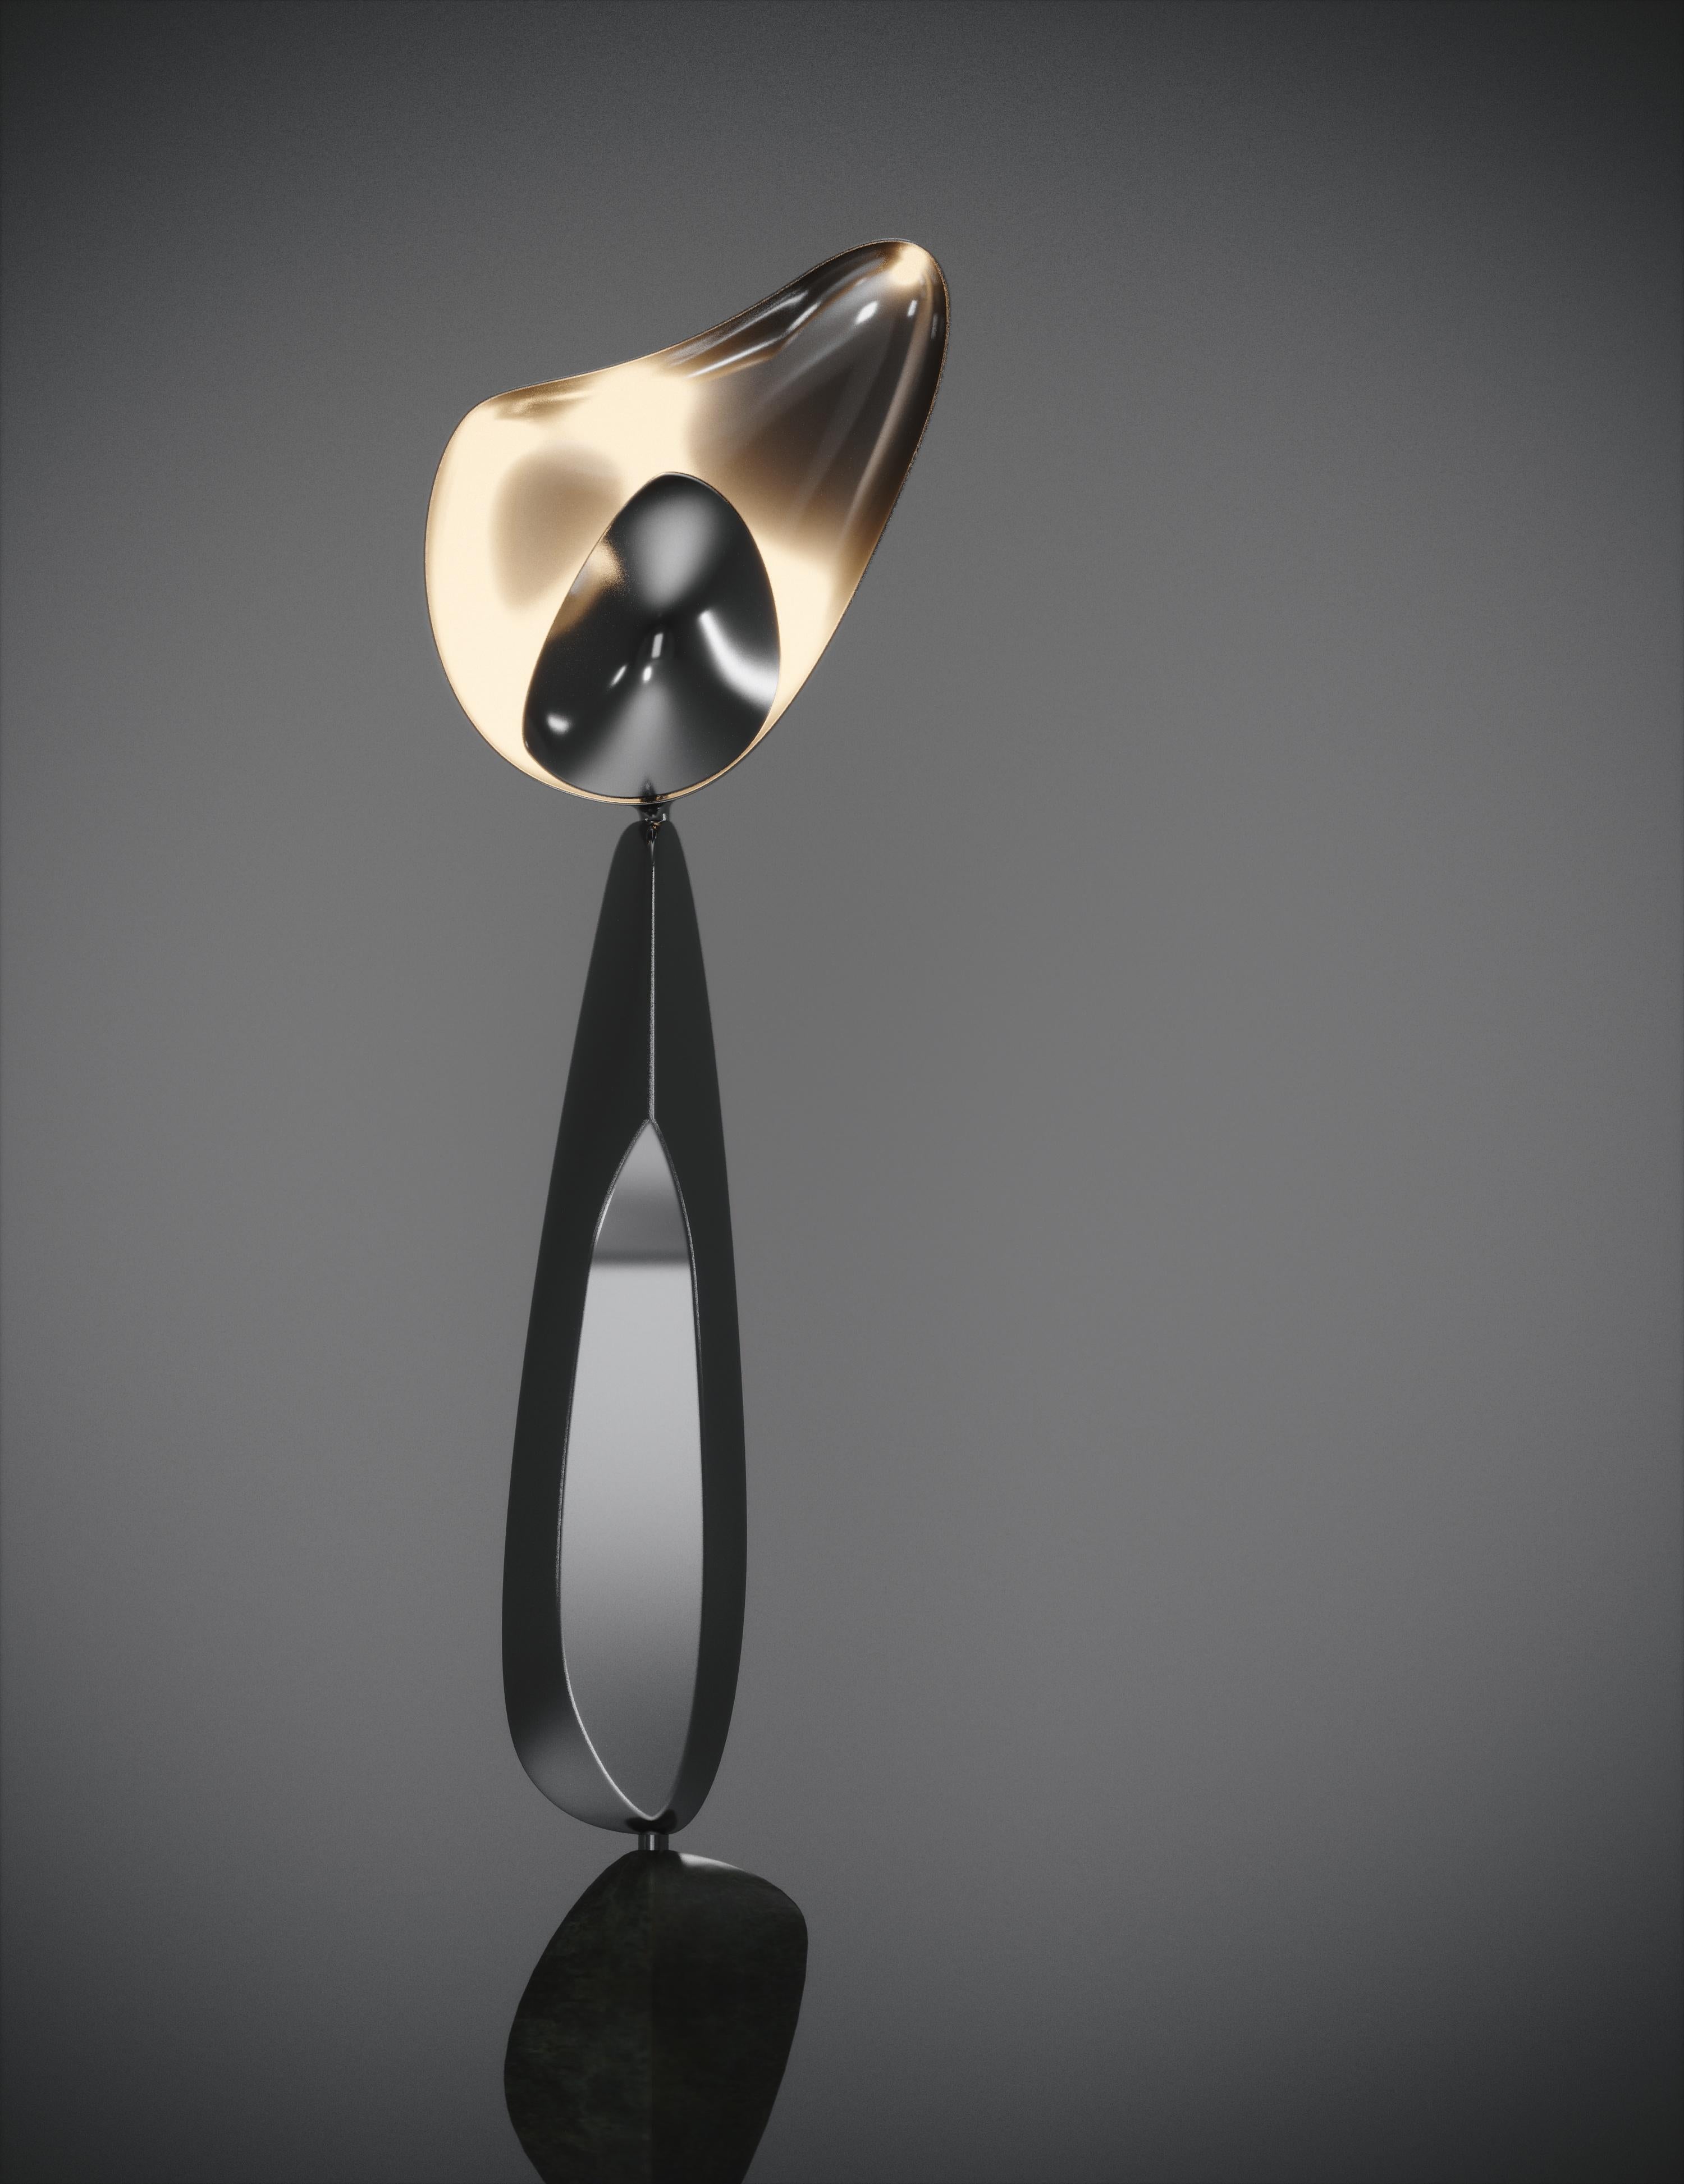 Le lampadaire Cosmo Moon de Feal Paris est une pièce fantaisiste et sculpturale, incrustée dans un acier inoxydable poli à finition chromée avec une incrustation de coquille de stylo noire ; créant une sensation vintage à la pièce. Les formes